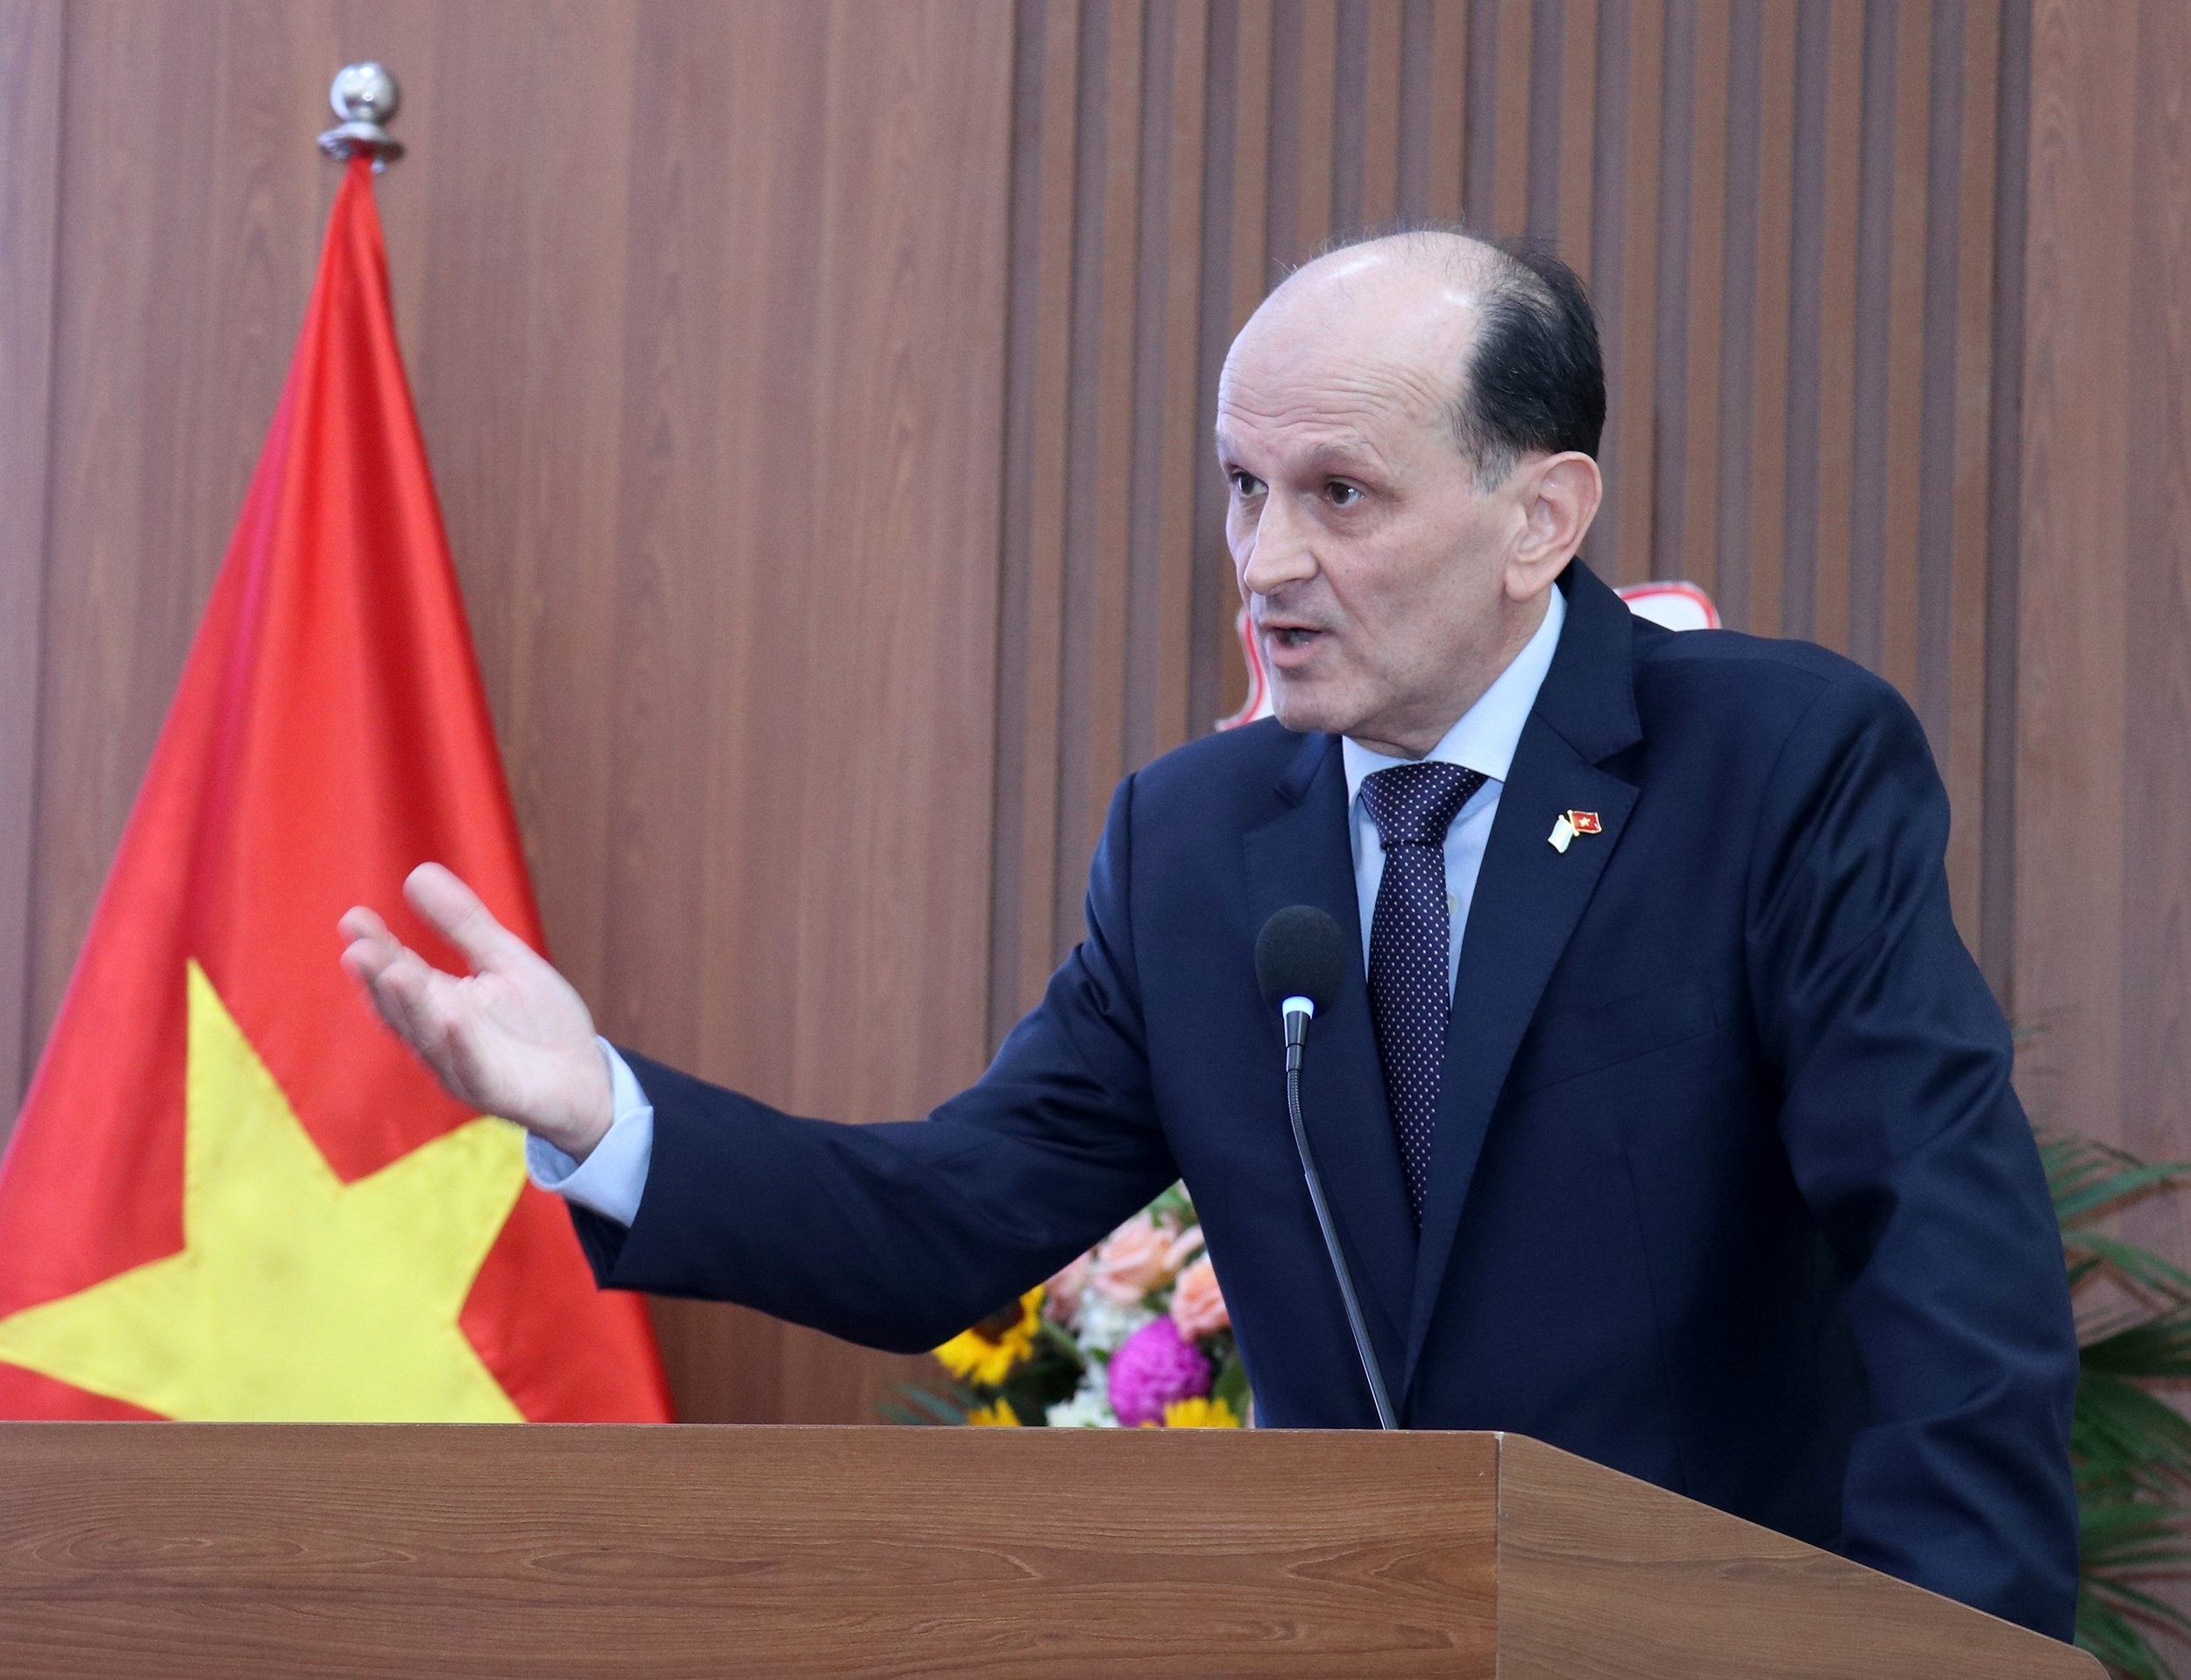 Đại sứ Argentina tại Việt Nam Luis Pablo Maria Beltramino phát biểu tại lễ kỷ niệm. (Ảnh: Thu Hà)